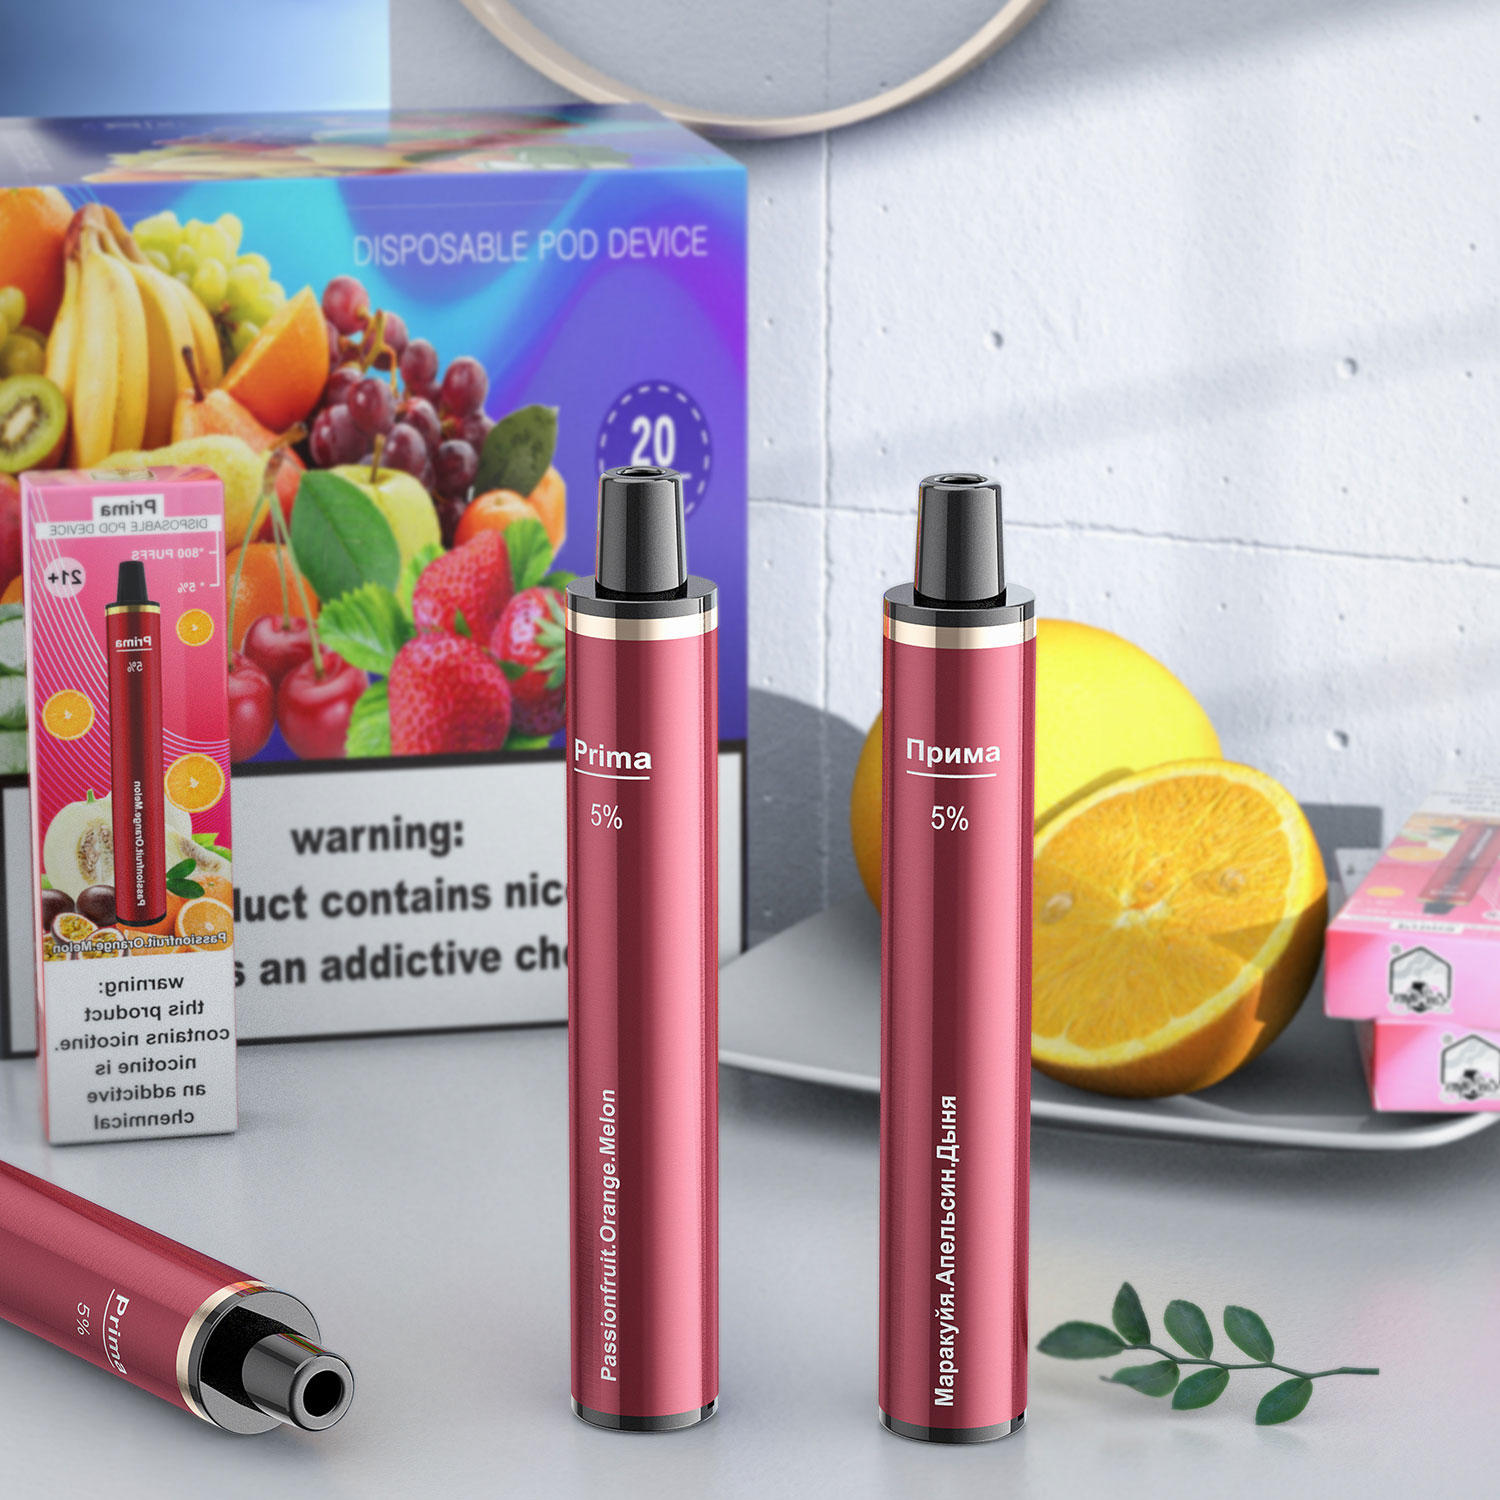 Coolvapor-S10 disposable e cigarettes vape pen pocket vape 800 puffs